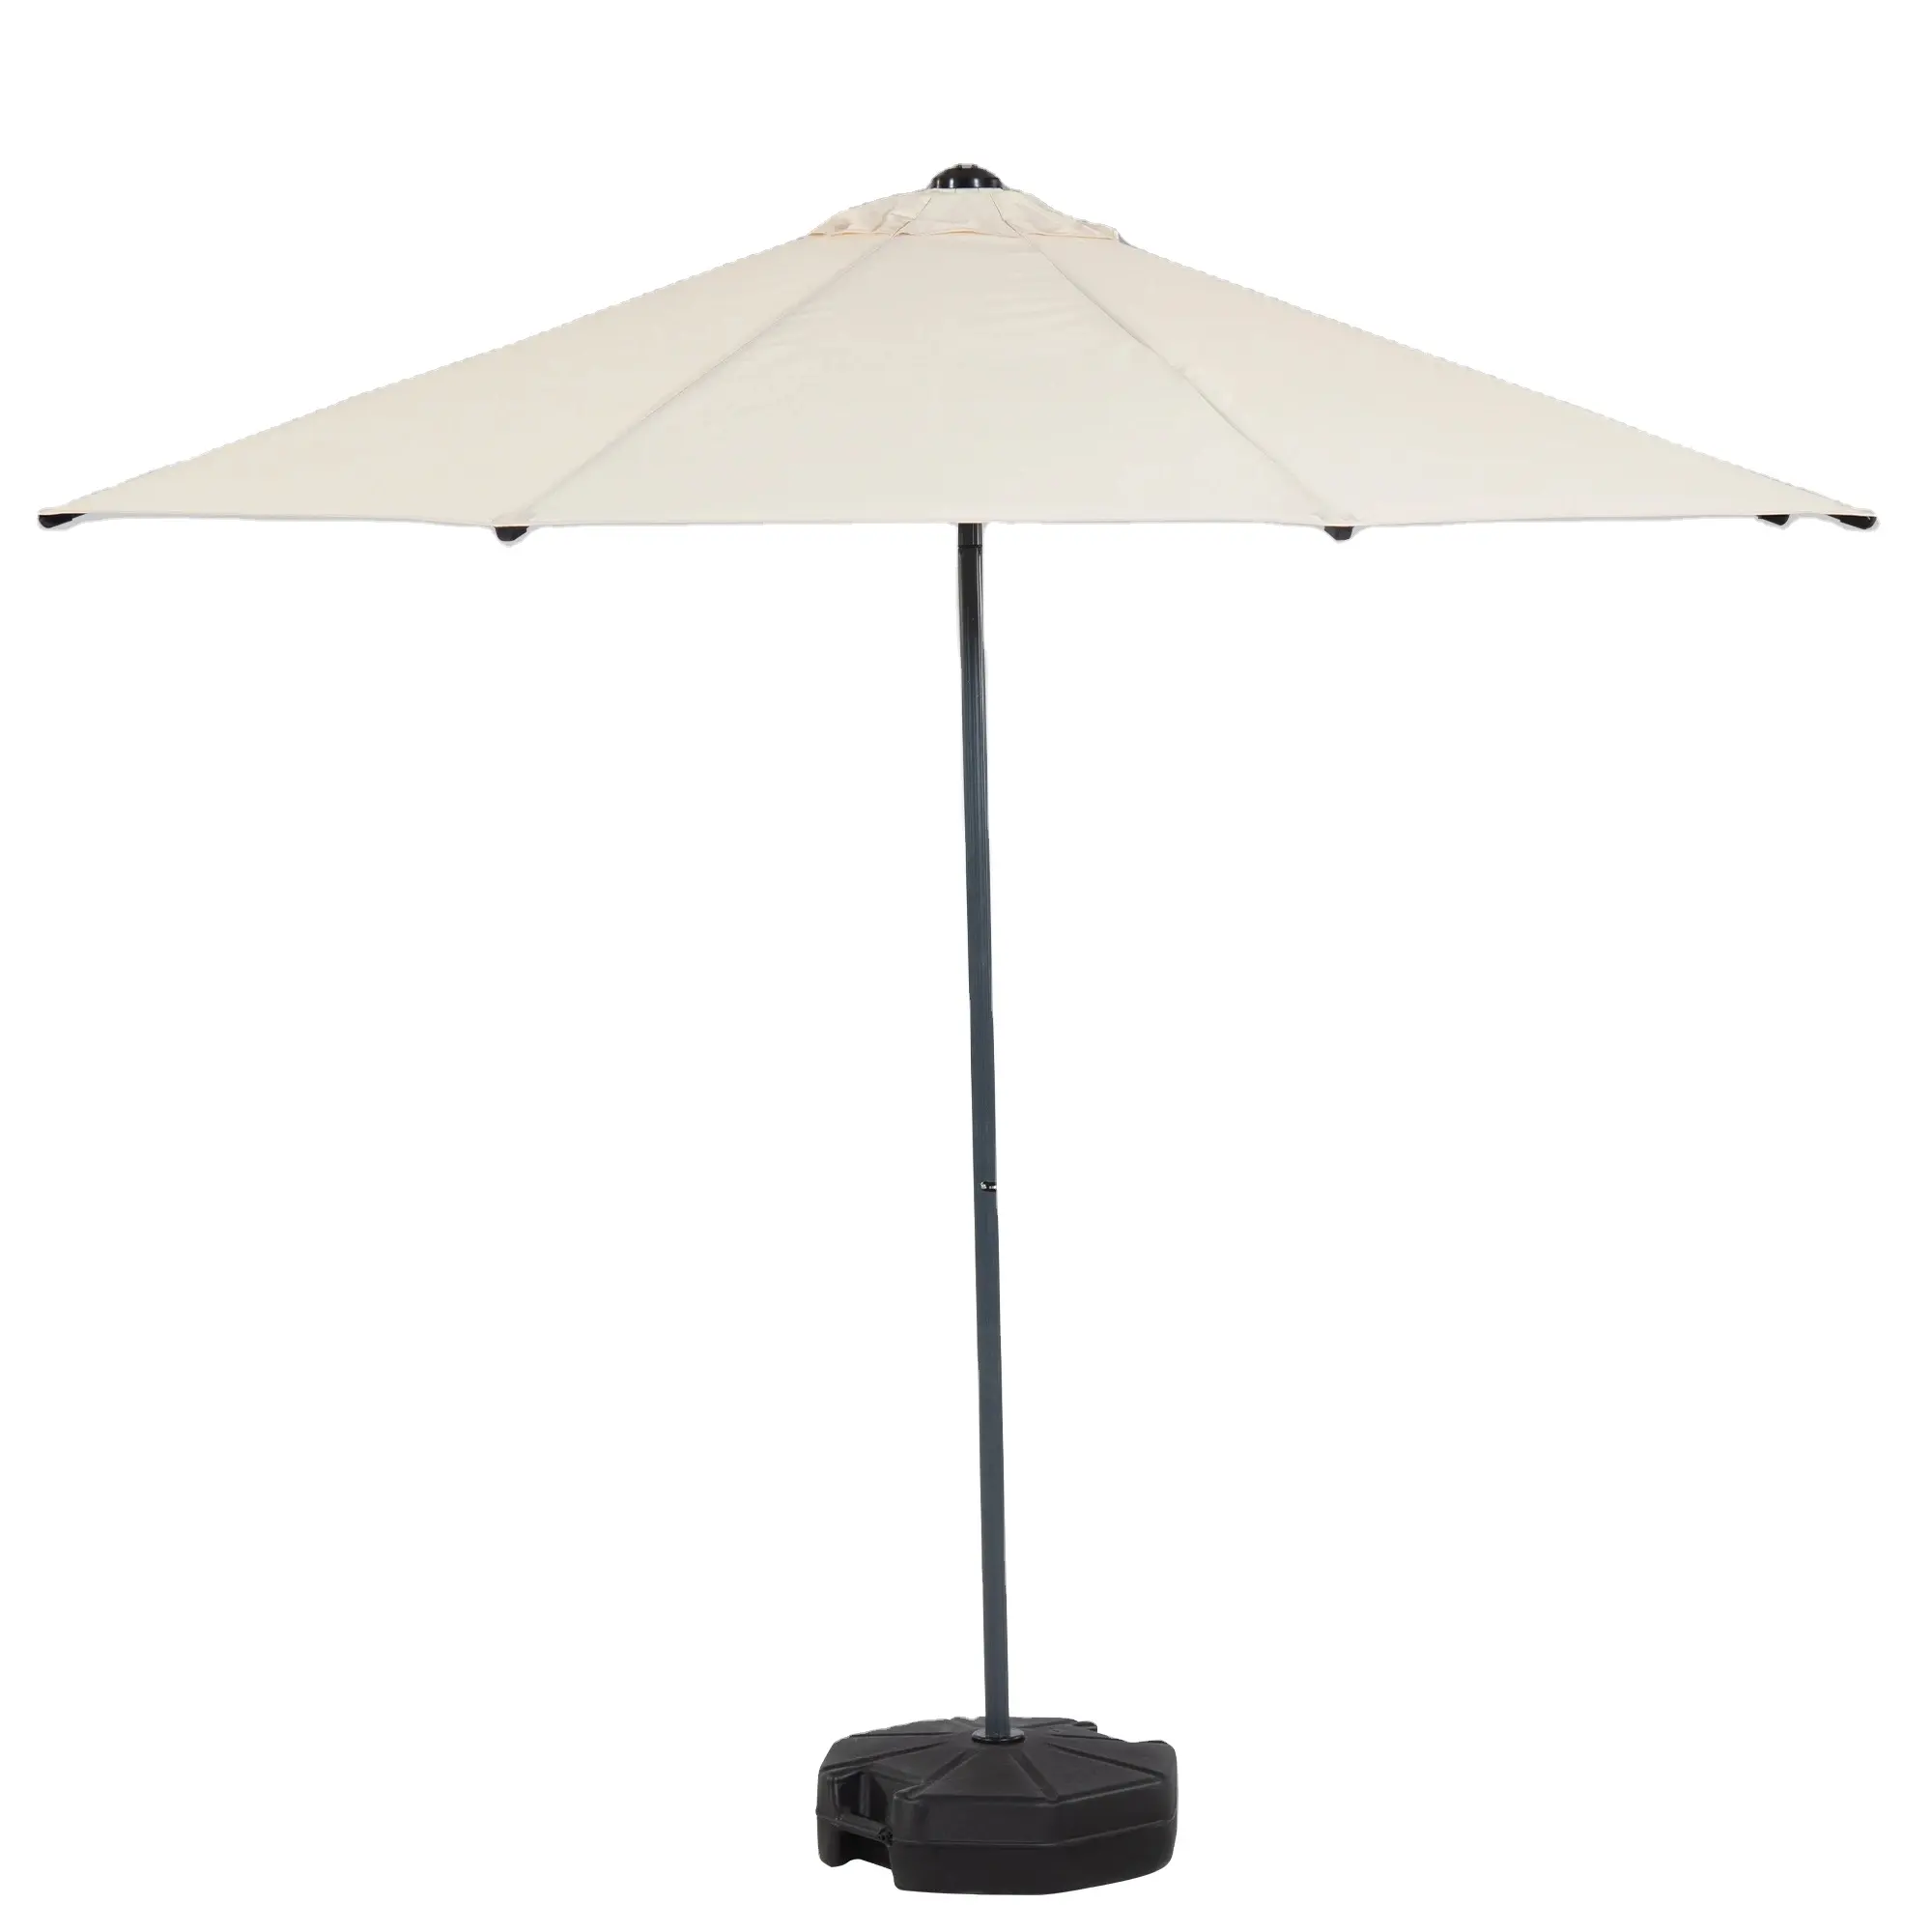 Kiwi Clips inclinable parapluie circulaire 200cm Parasol de haute qualité pour hôtel extérieur plage jardin parapluie Parasol